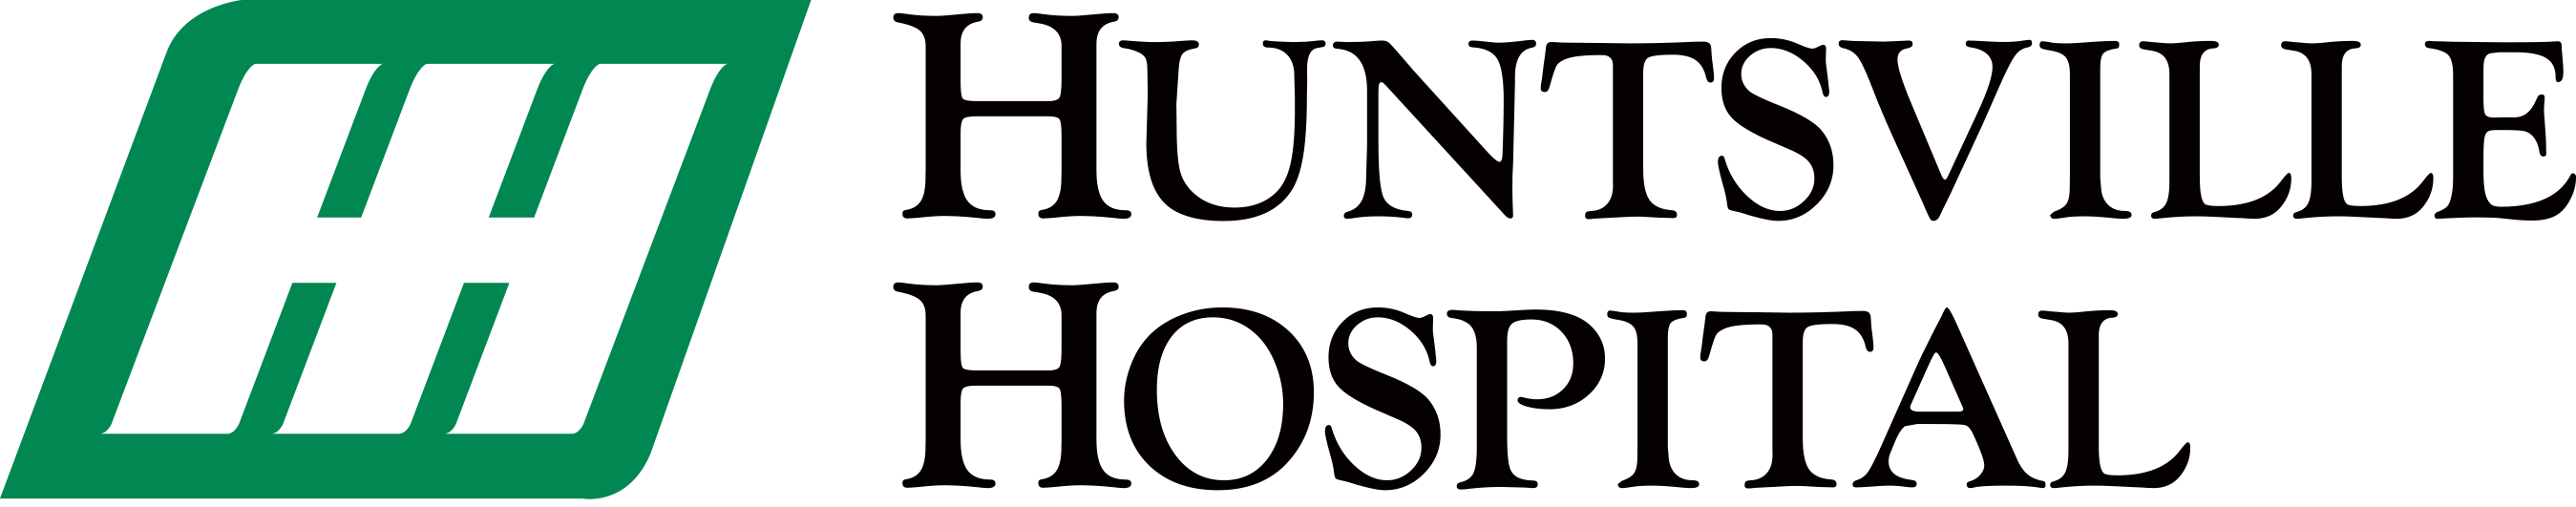 Huntsville hospital logo